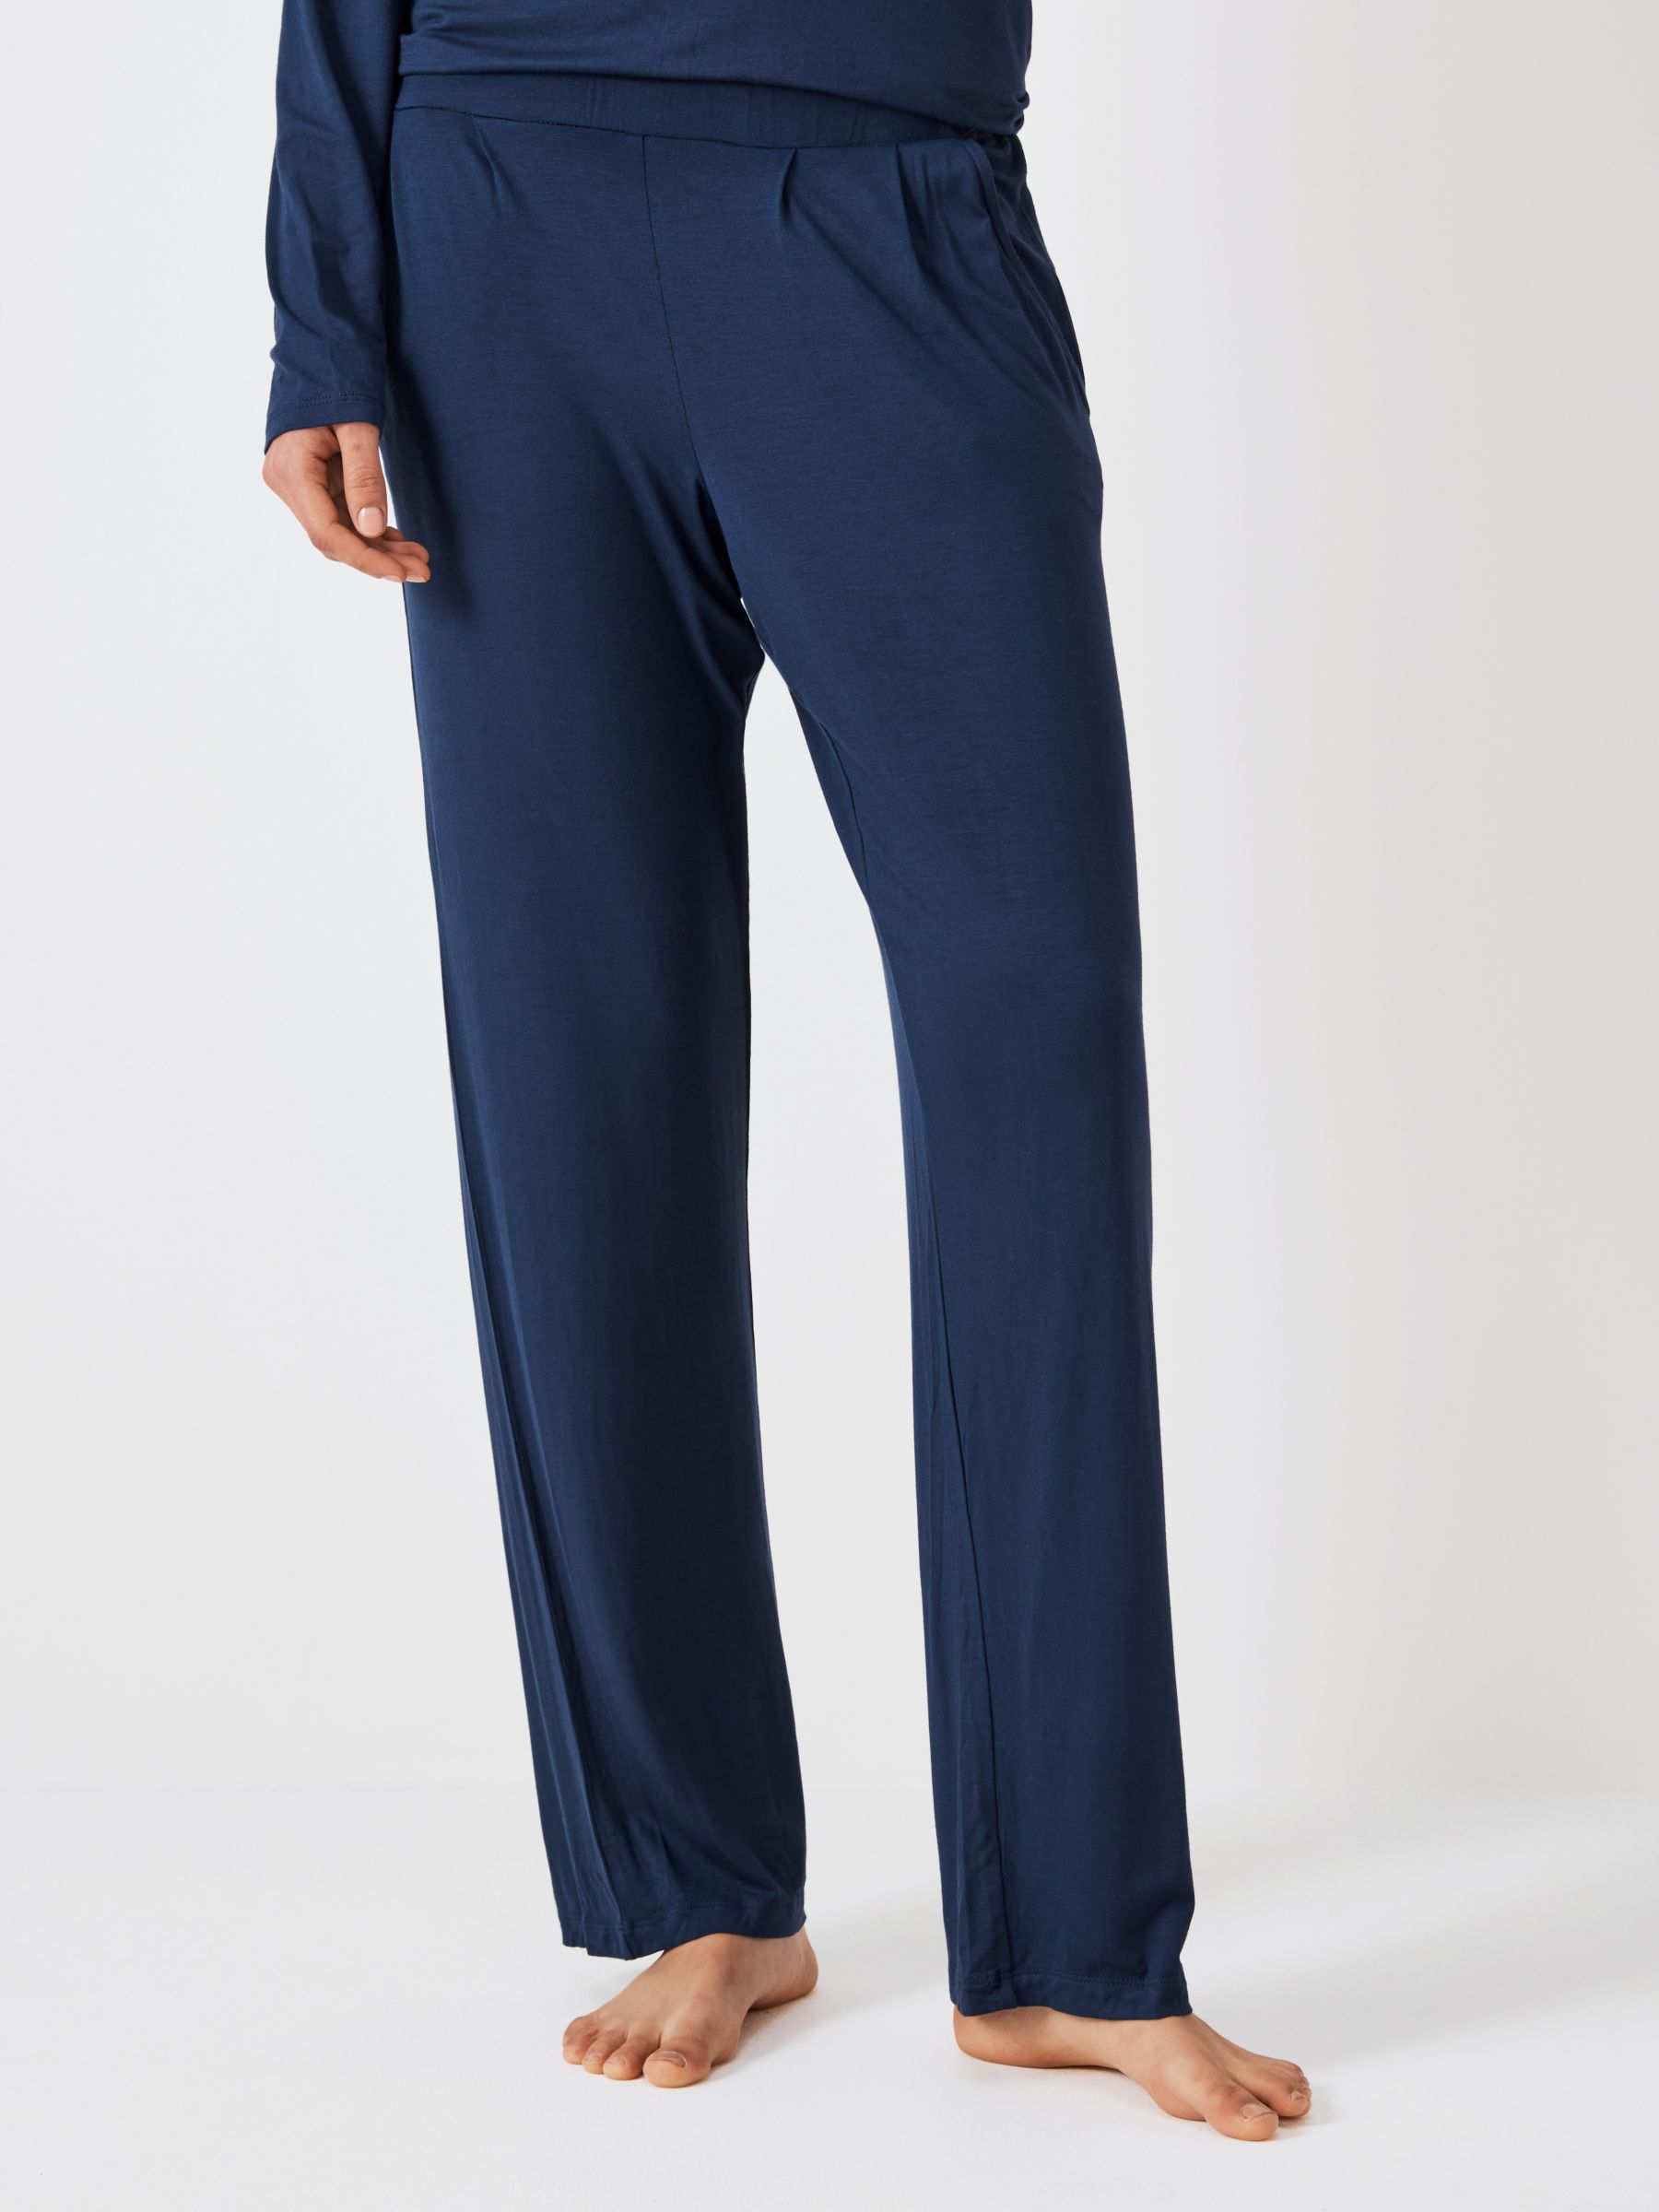 Women's Plain Cashmere Lounge Trousers Navy Blue